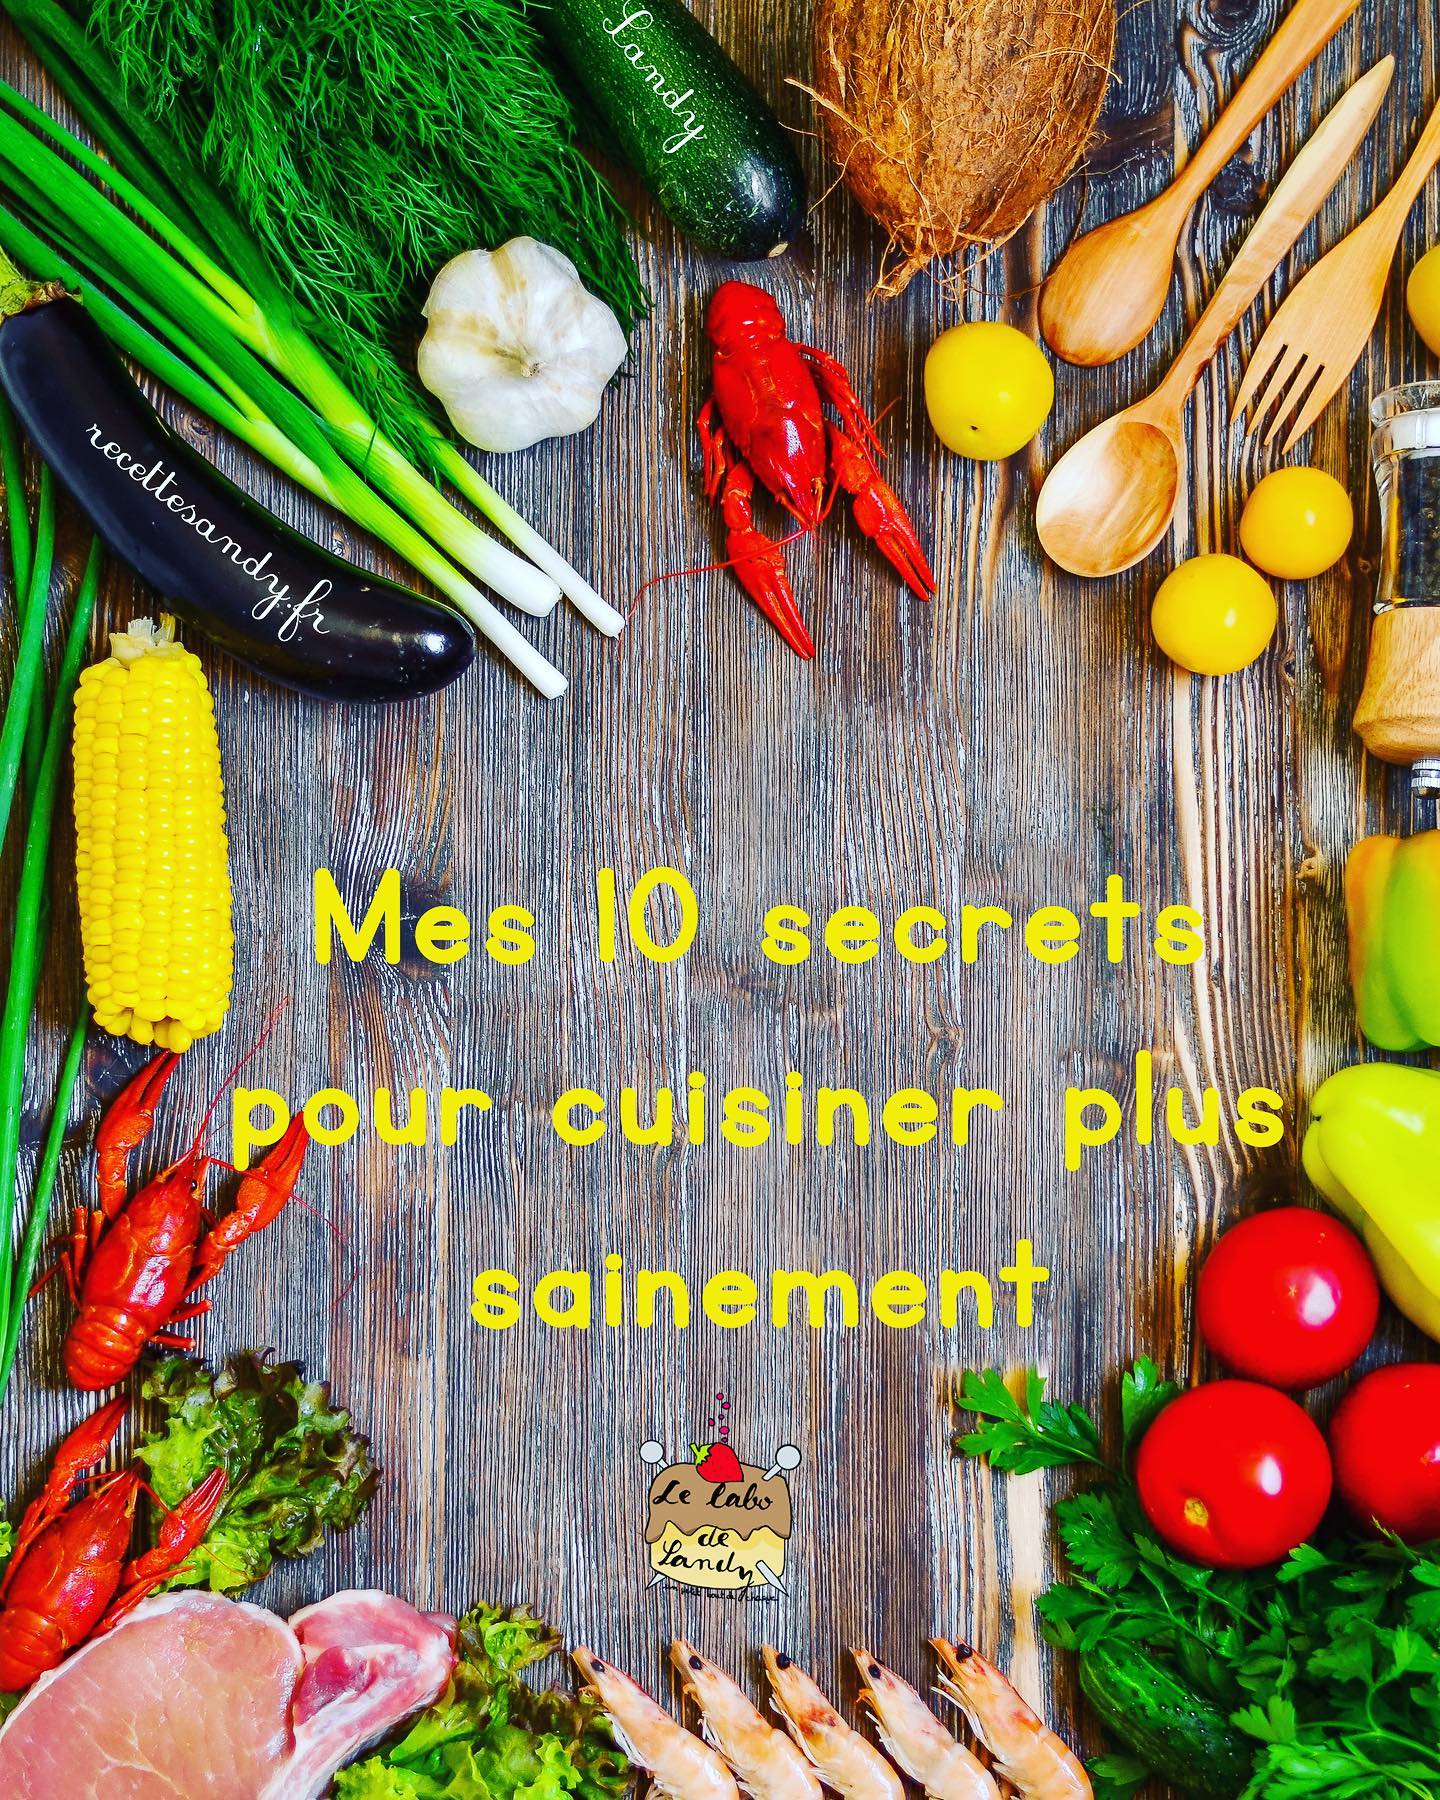 Mon ebook Mes 10 astuces pour cuisiner plus sainement est disponible gratuitement sur mon site liens en bio. #recettesandy #cuisiner #cooking #healthyfood